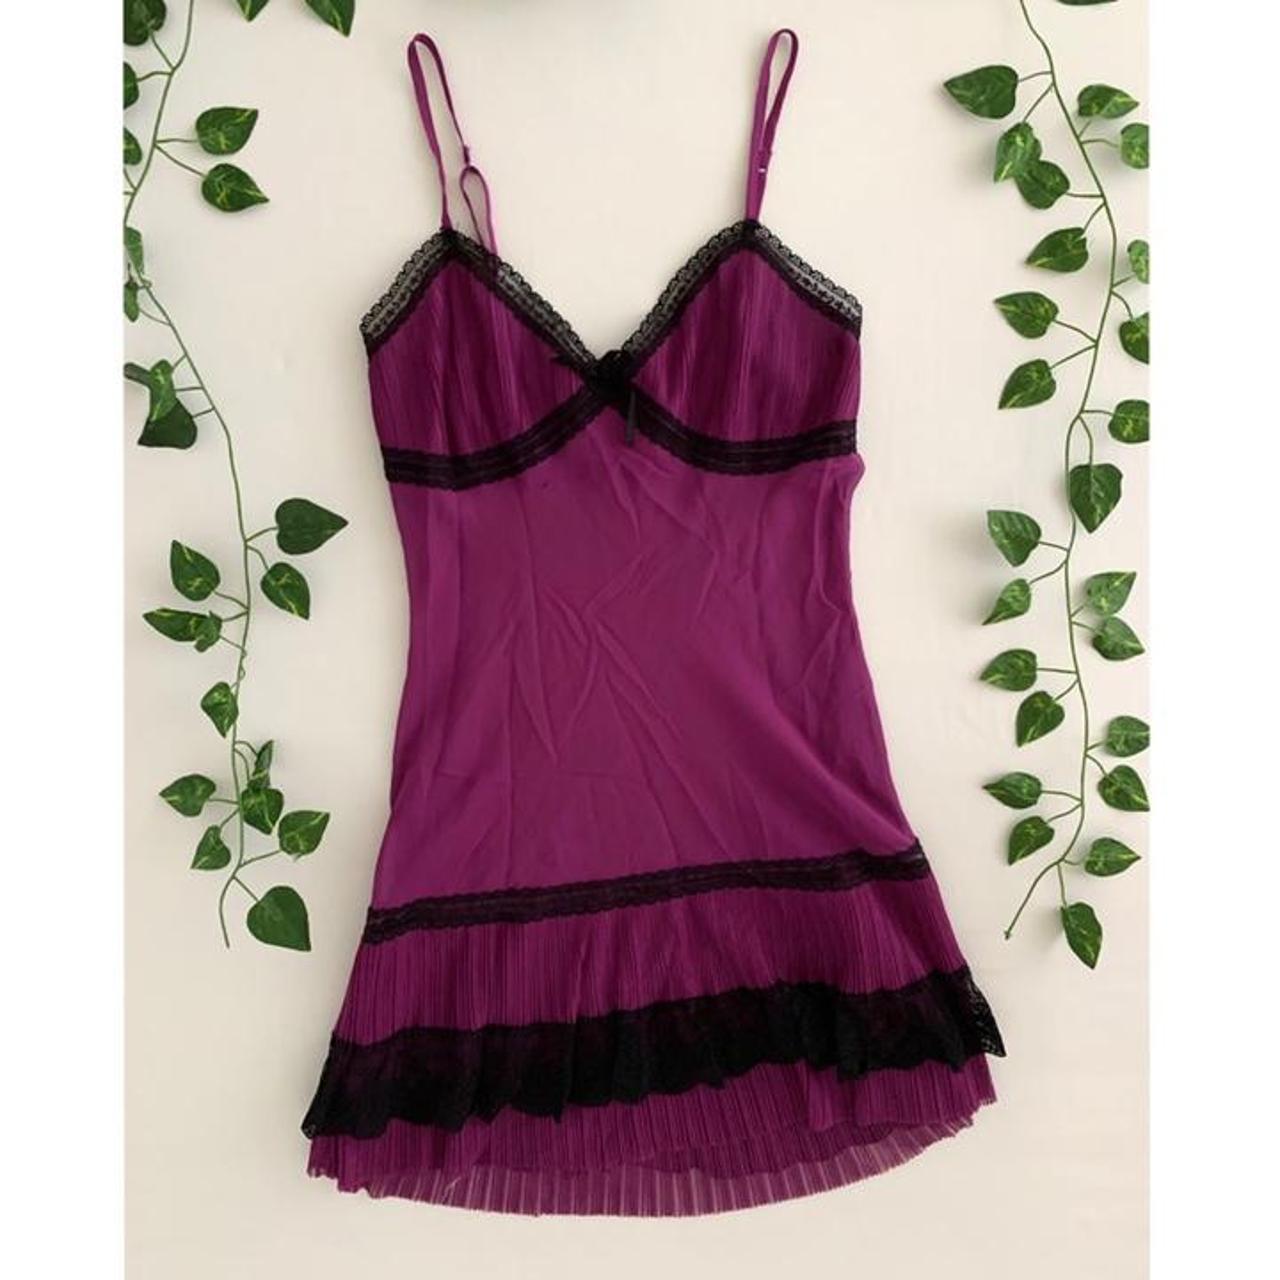 Boutique La Vie en Rose Women's Purple and Black Nightwear (2)